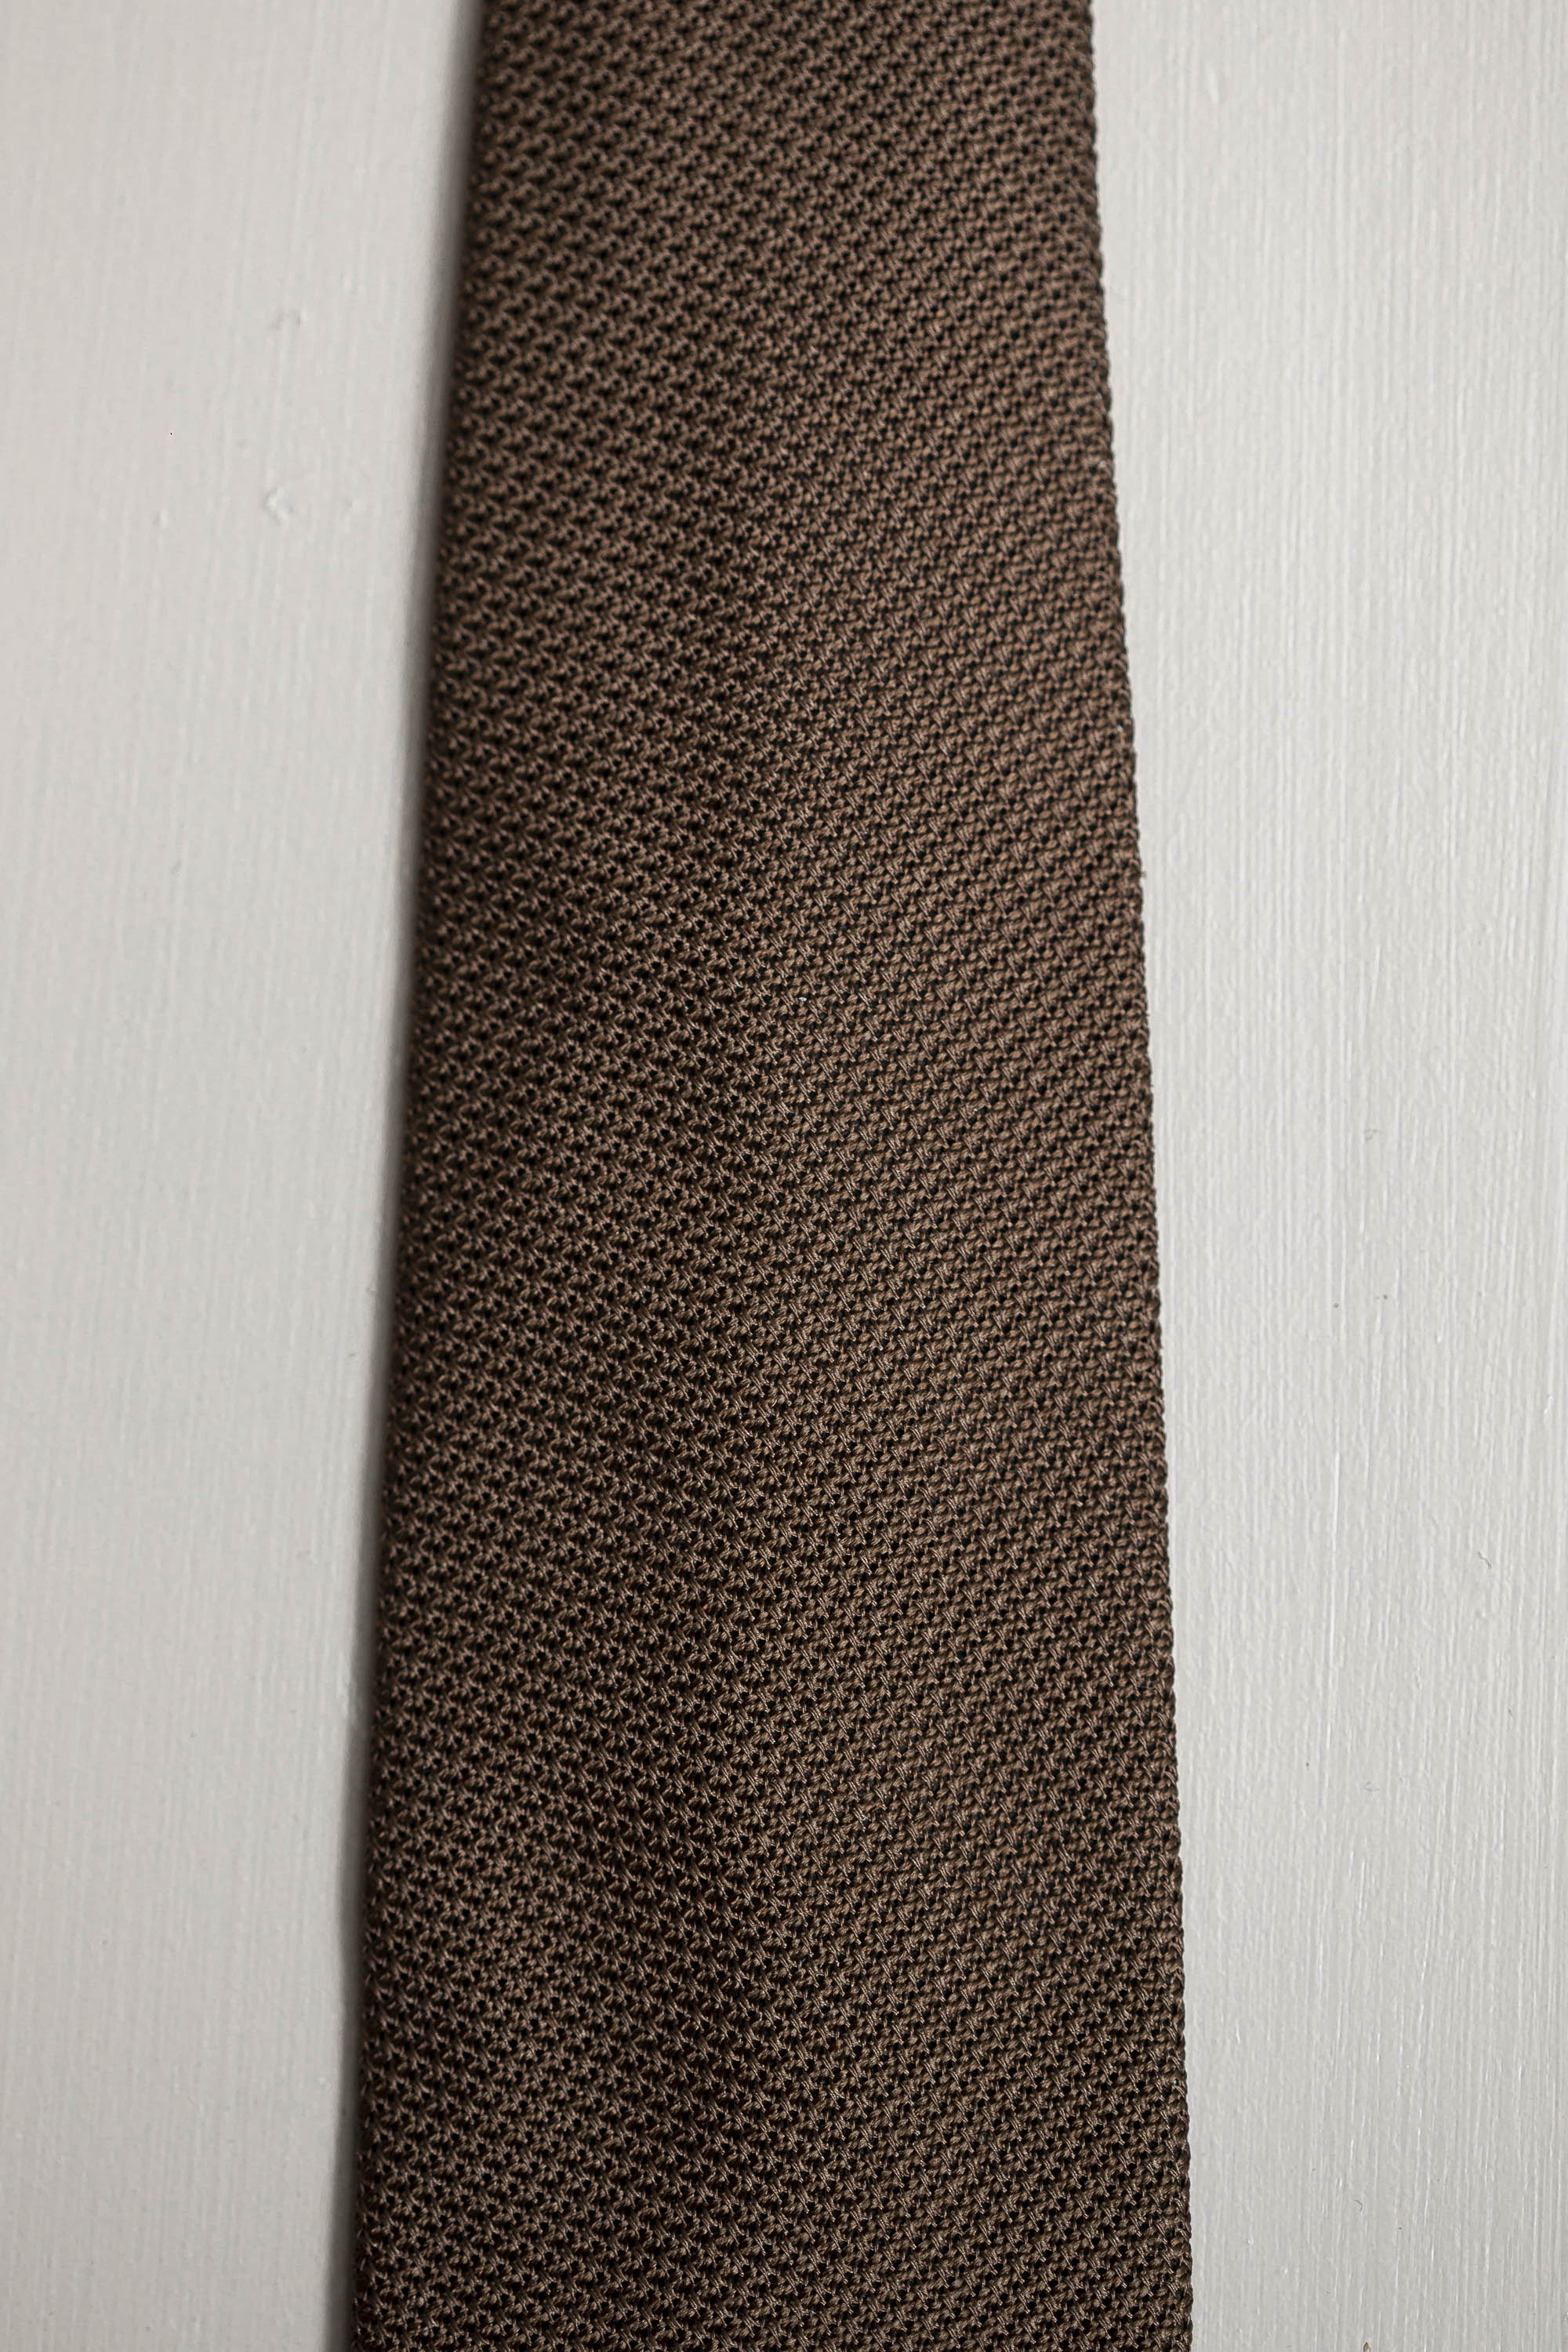 Cravatta in seta, cravatta italiana, made in italy, grenadine cravatta, Cravate en soie, soie marron, cravate italienne, made in italy, cravate grenadine, Silk tie, brown silk, italian tie, made in italy, grenadine tie